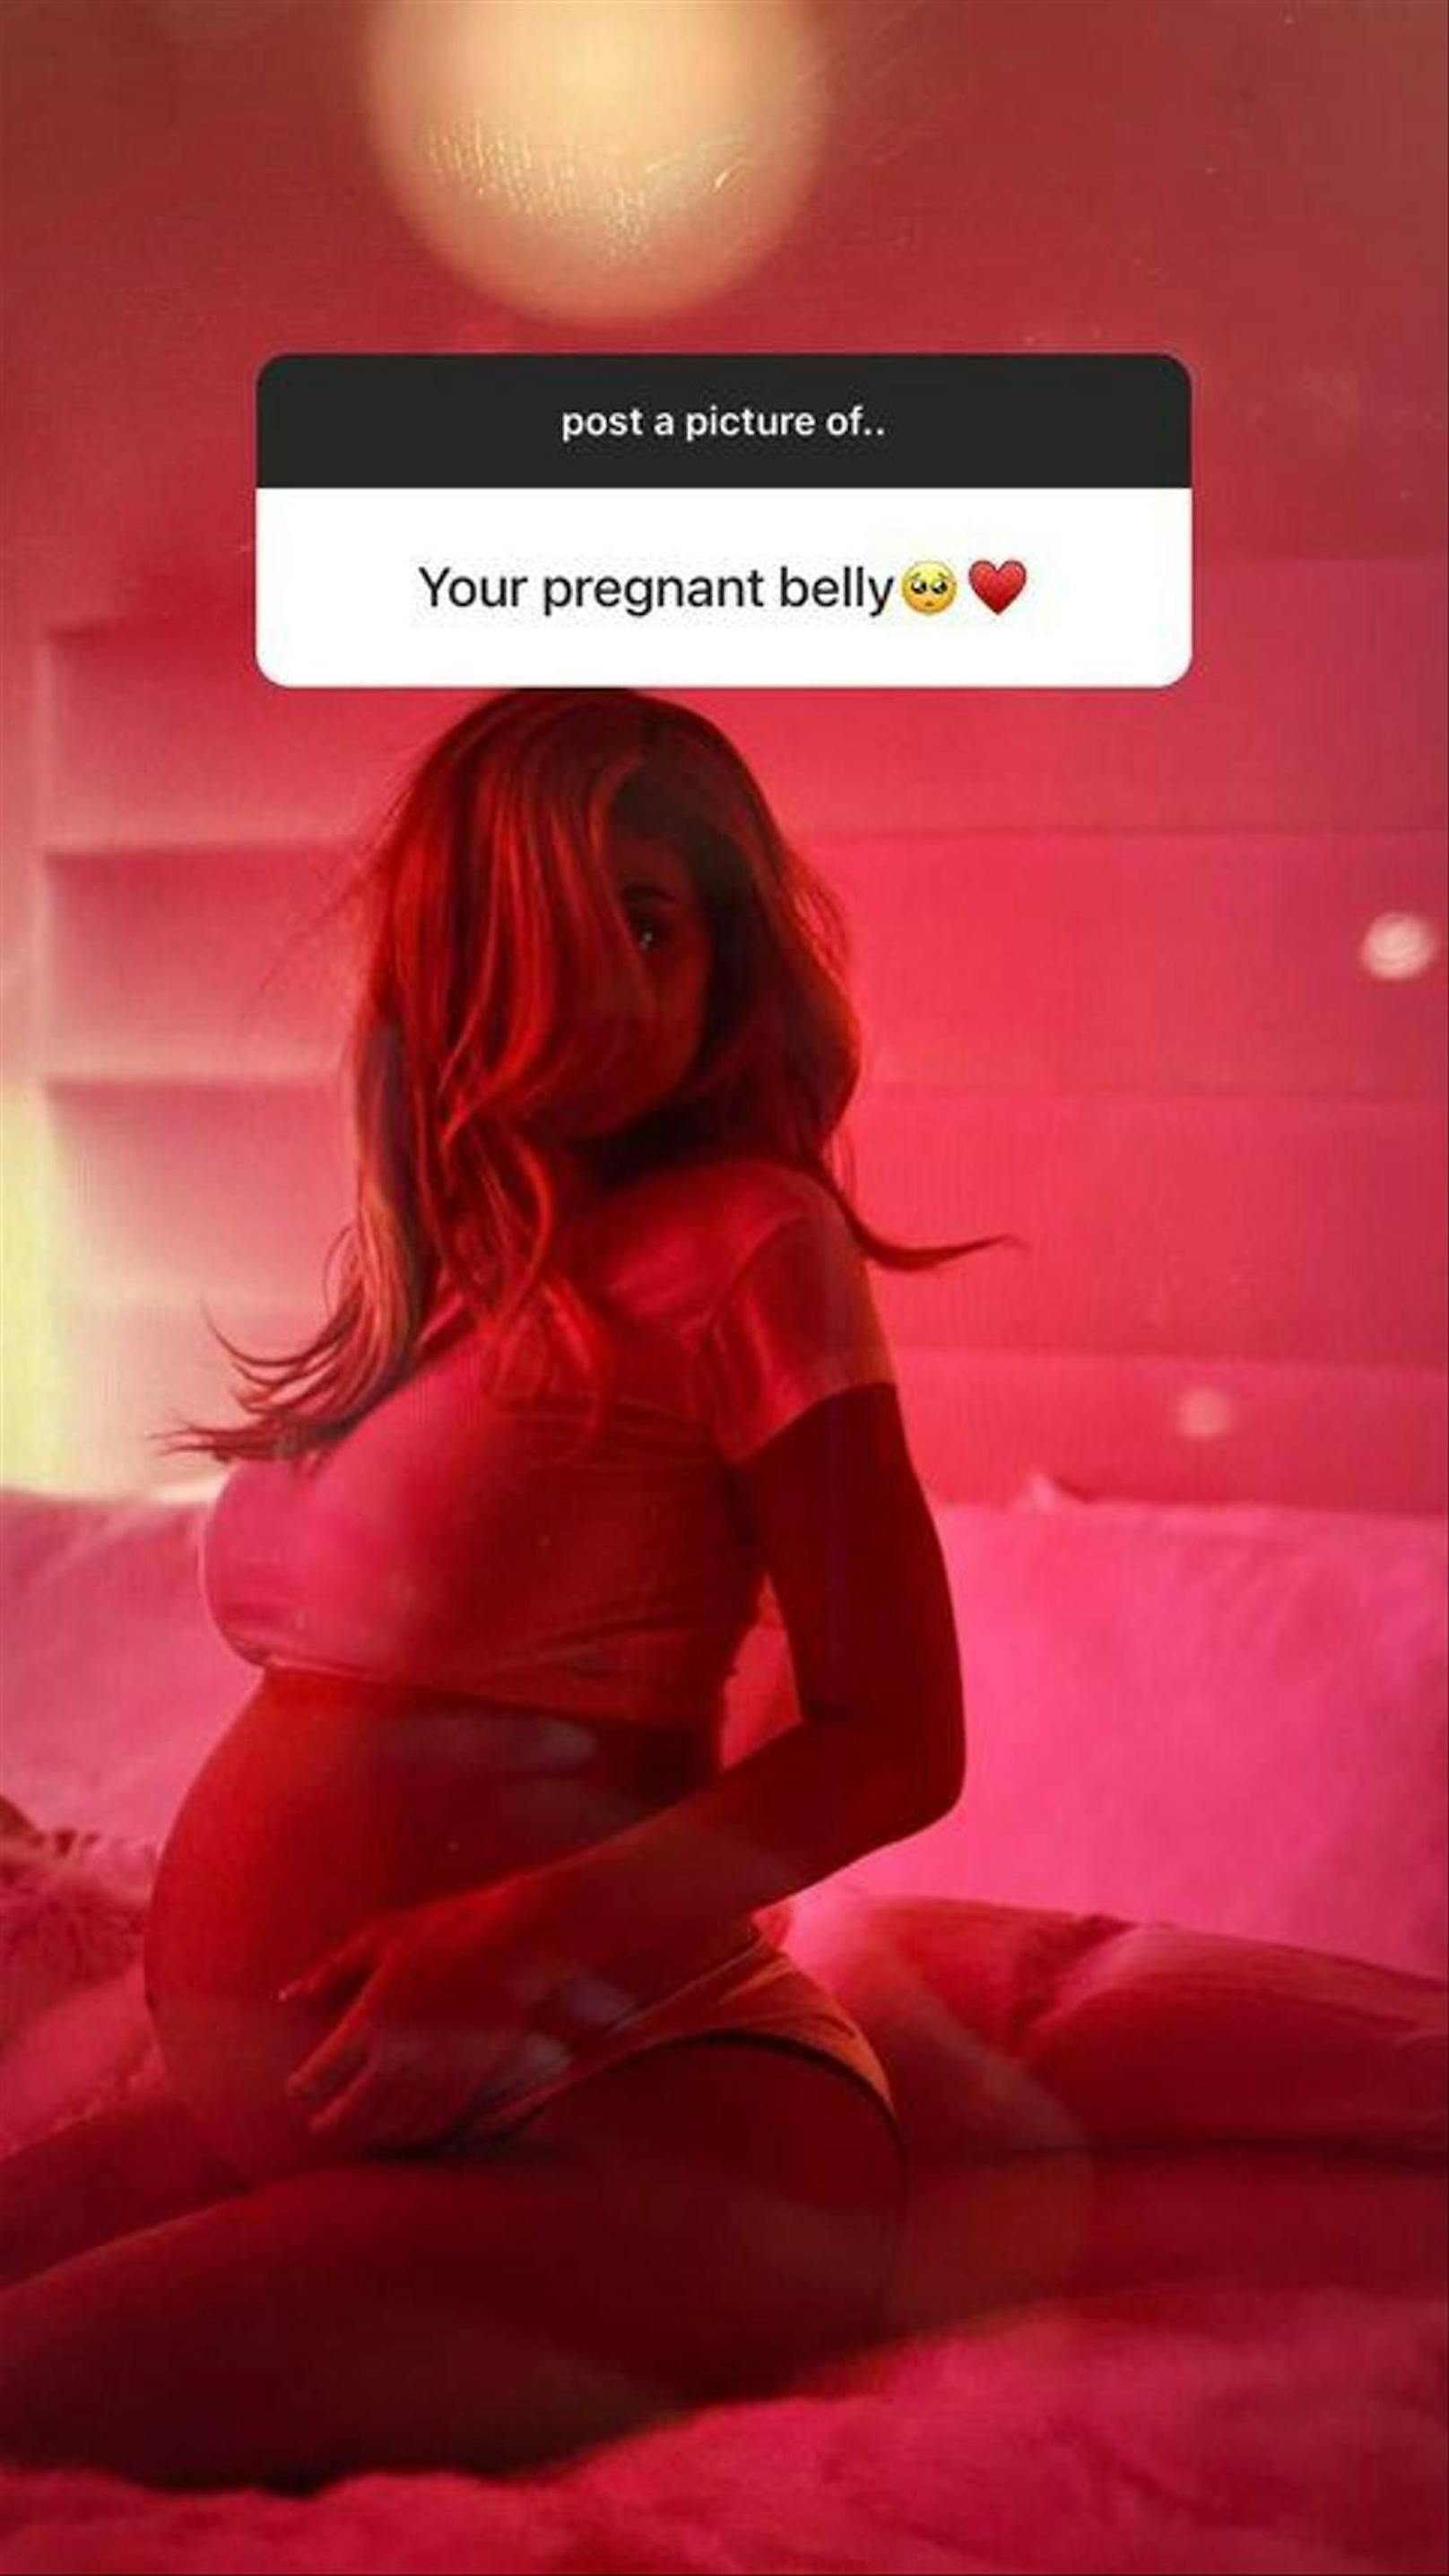 Dieses Foto mag jetzt nicht sehr spektakulär erscheinen, aber es ist tatsächlich eine kleine Sensation. Kylie hatte ihre Schwangerschaft nämlich geheim gehalten und bisher kaum Bilder mit Babybauch veröffentlicht. Im Februar 2018 verkündete sie damals aus dem Nichts, dass sie eine Tochter bekommen hat. 